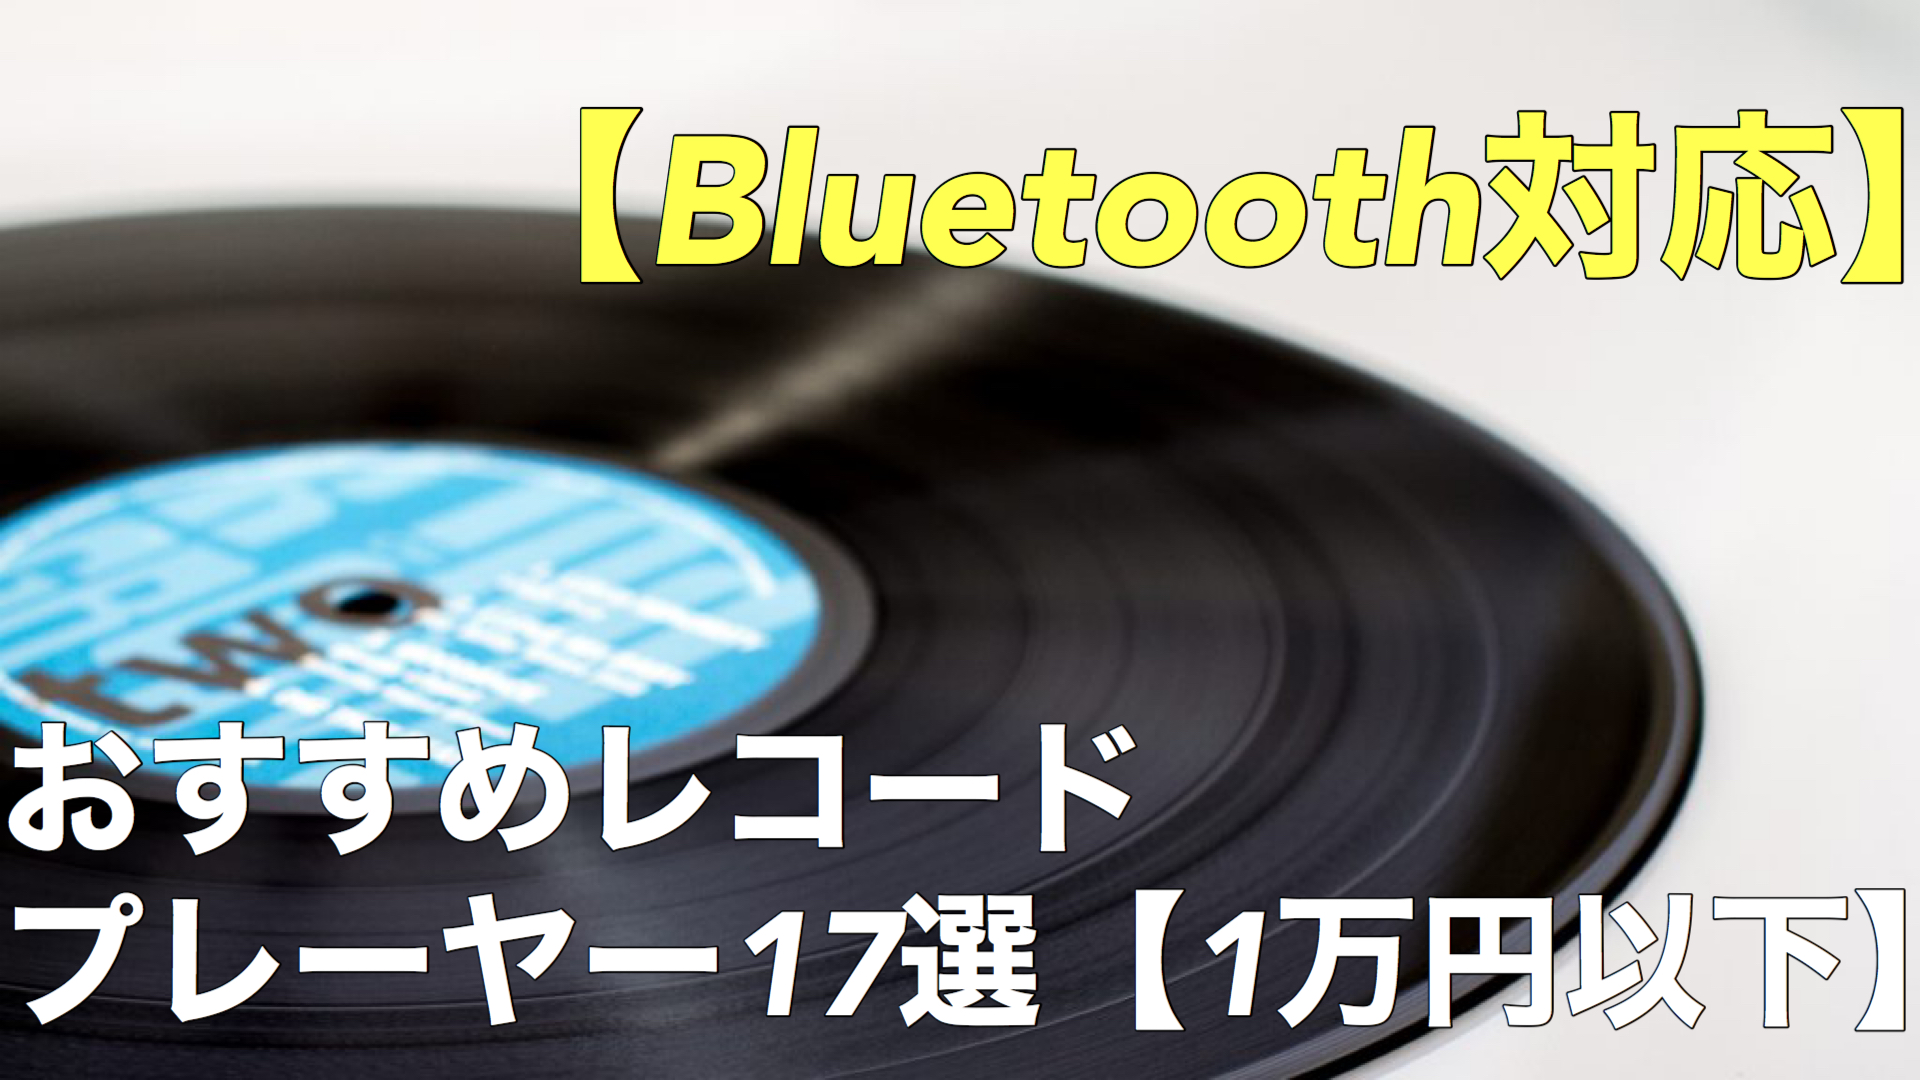 FUZE Bluetooth搭載多機能レコードプレーヤー CLS60 LP AM EP CD レコード ワイドFM